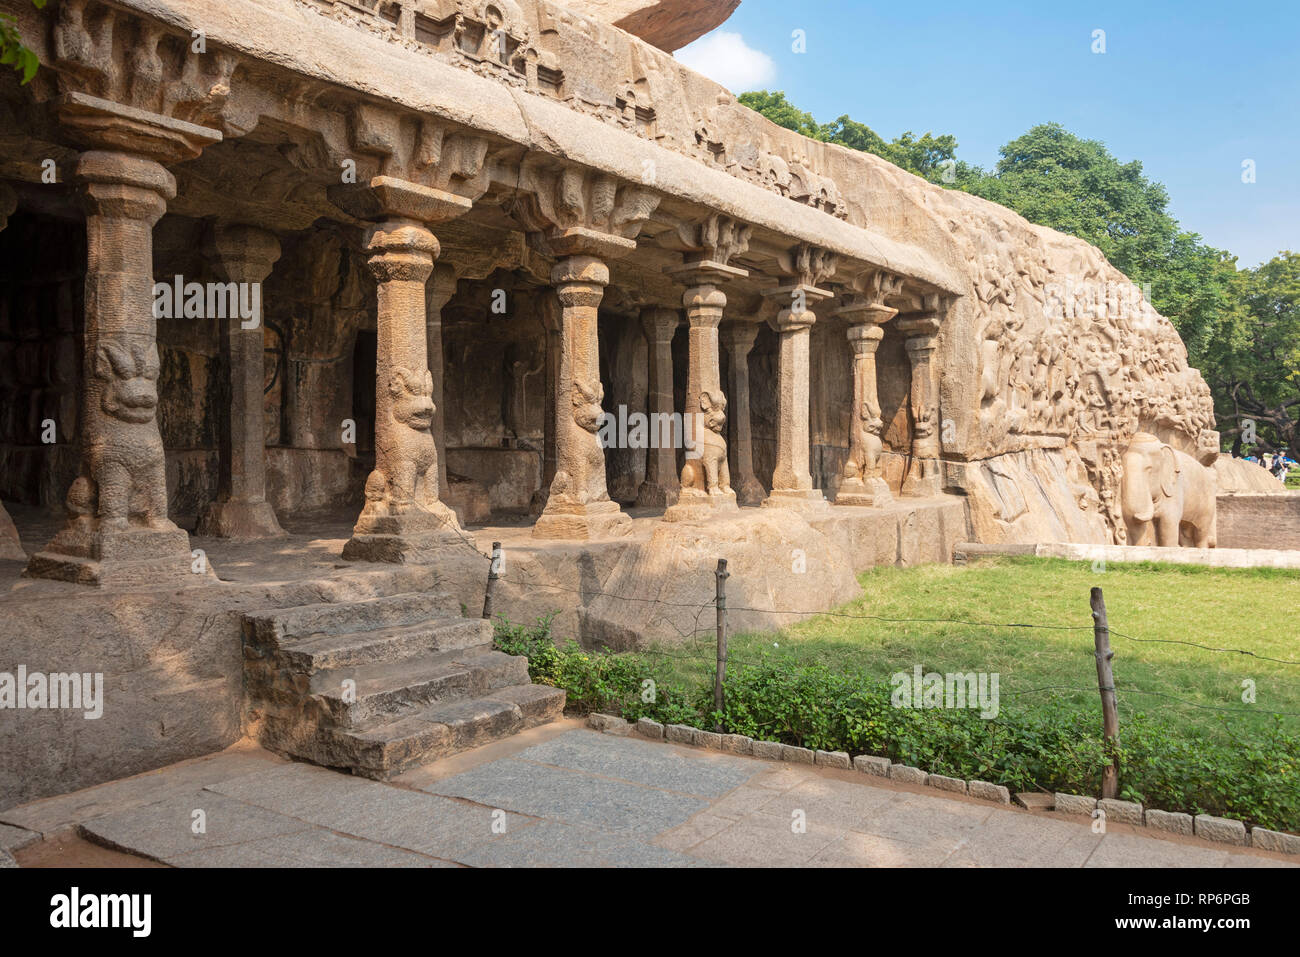 Abstieg des Ganges ist ein Denkmal an Mamallapuram. Messung von 29 m × 13 m, es ist eine riesige Open-Air-rock Relief auf zwei monolithischen Felsen Felsen geschnitzt. Stockfoto